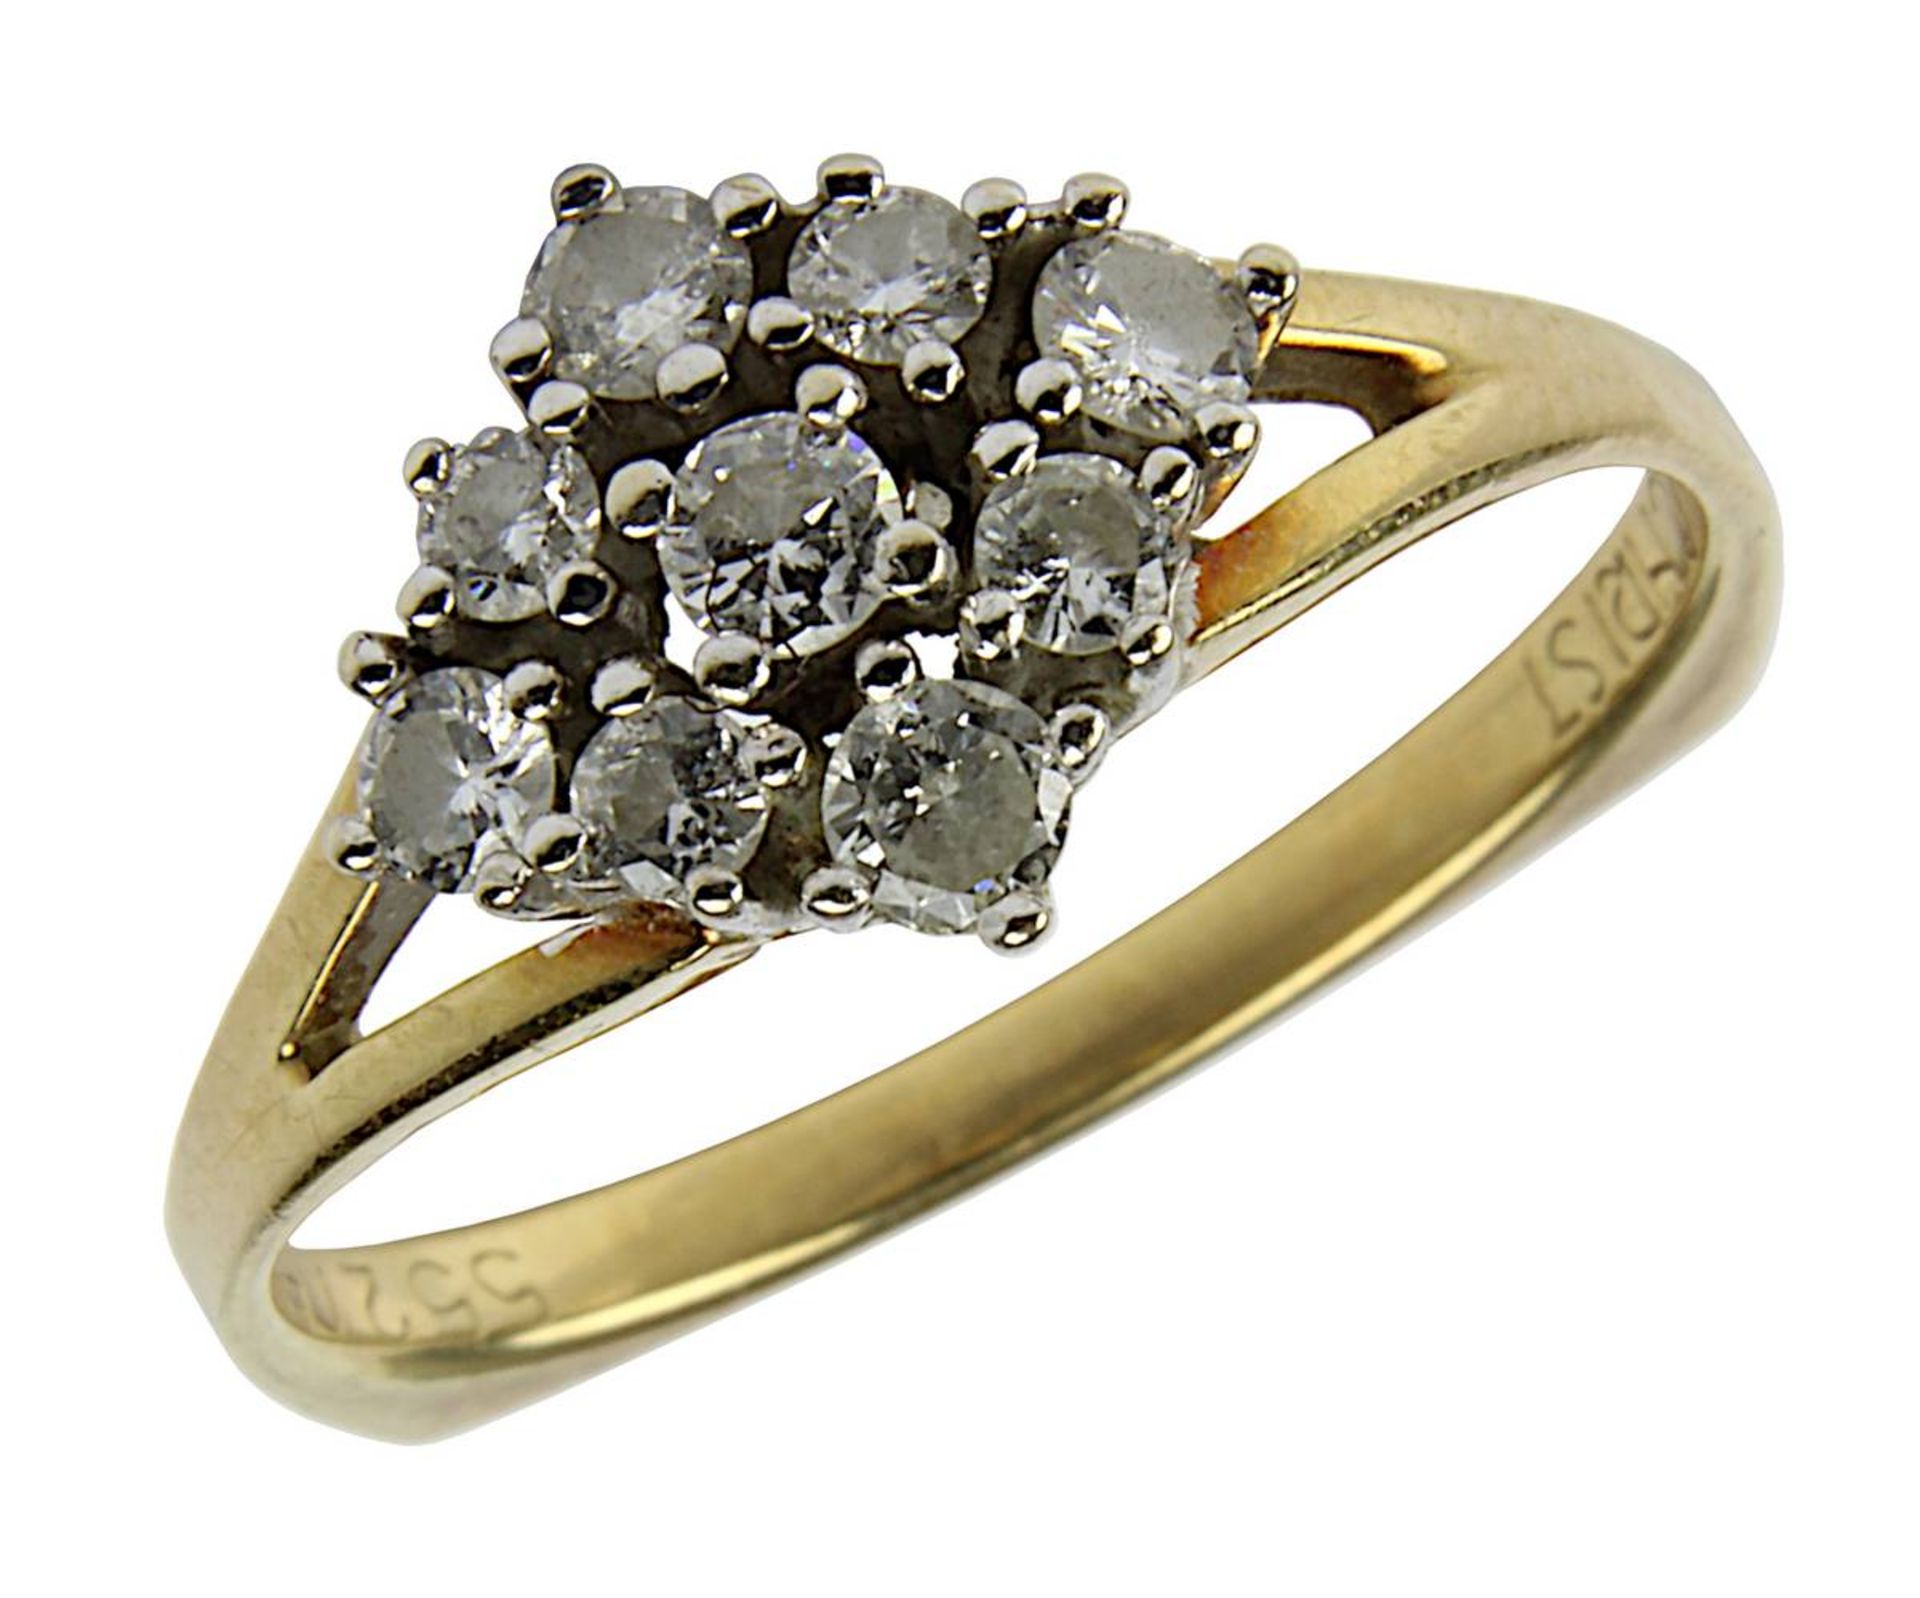 Gelbgold-Ring mit Brillanten, gepunzt 585 und Christ, 9 Diamanten im Brillantschliff, zus. ca. 0,